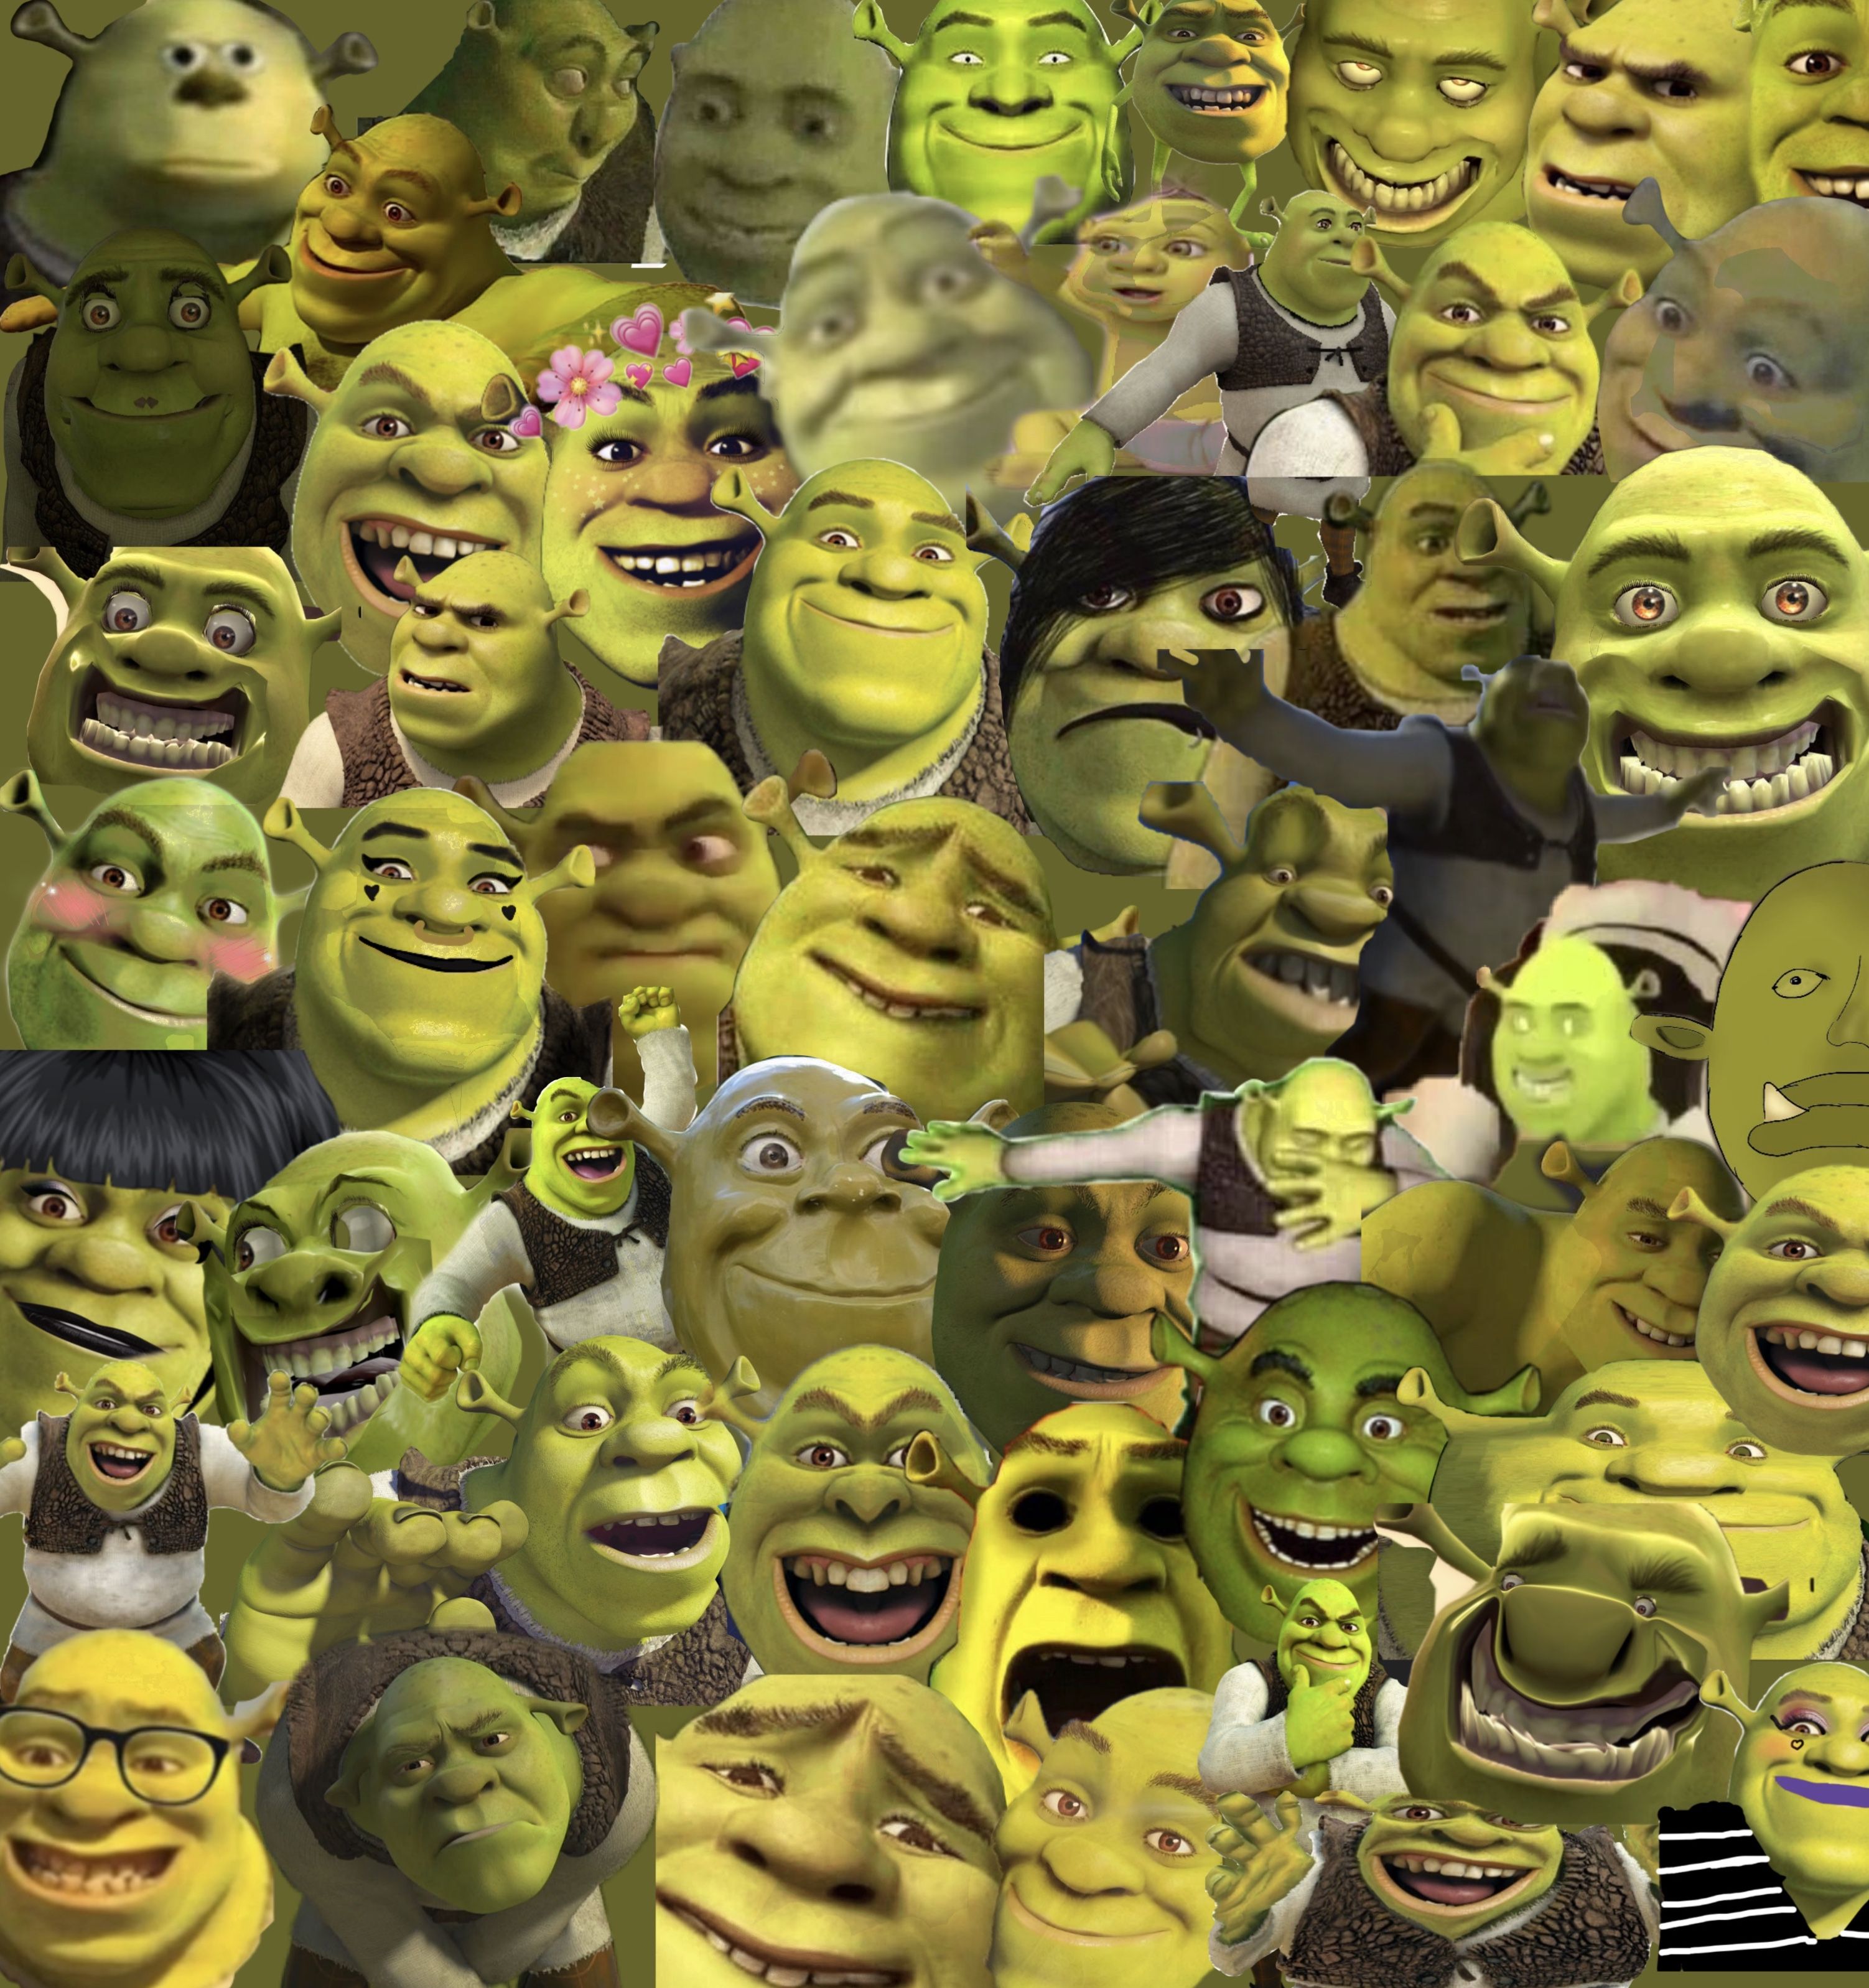 Angry Shrek Art Wallpapers  Shrek Aesthetic Wallpaper for iPhone